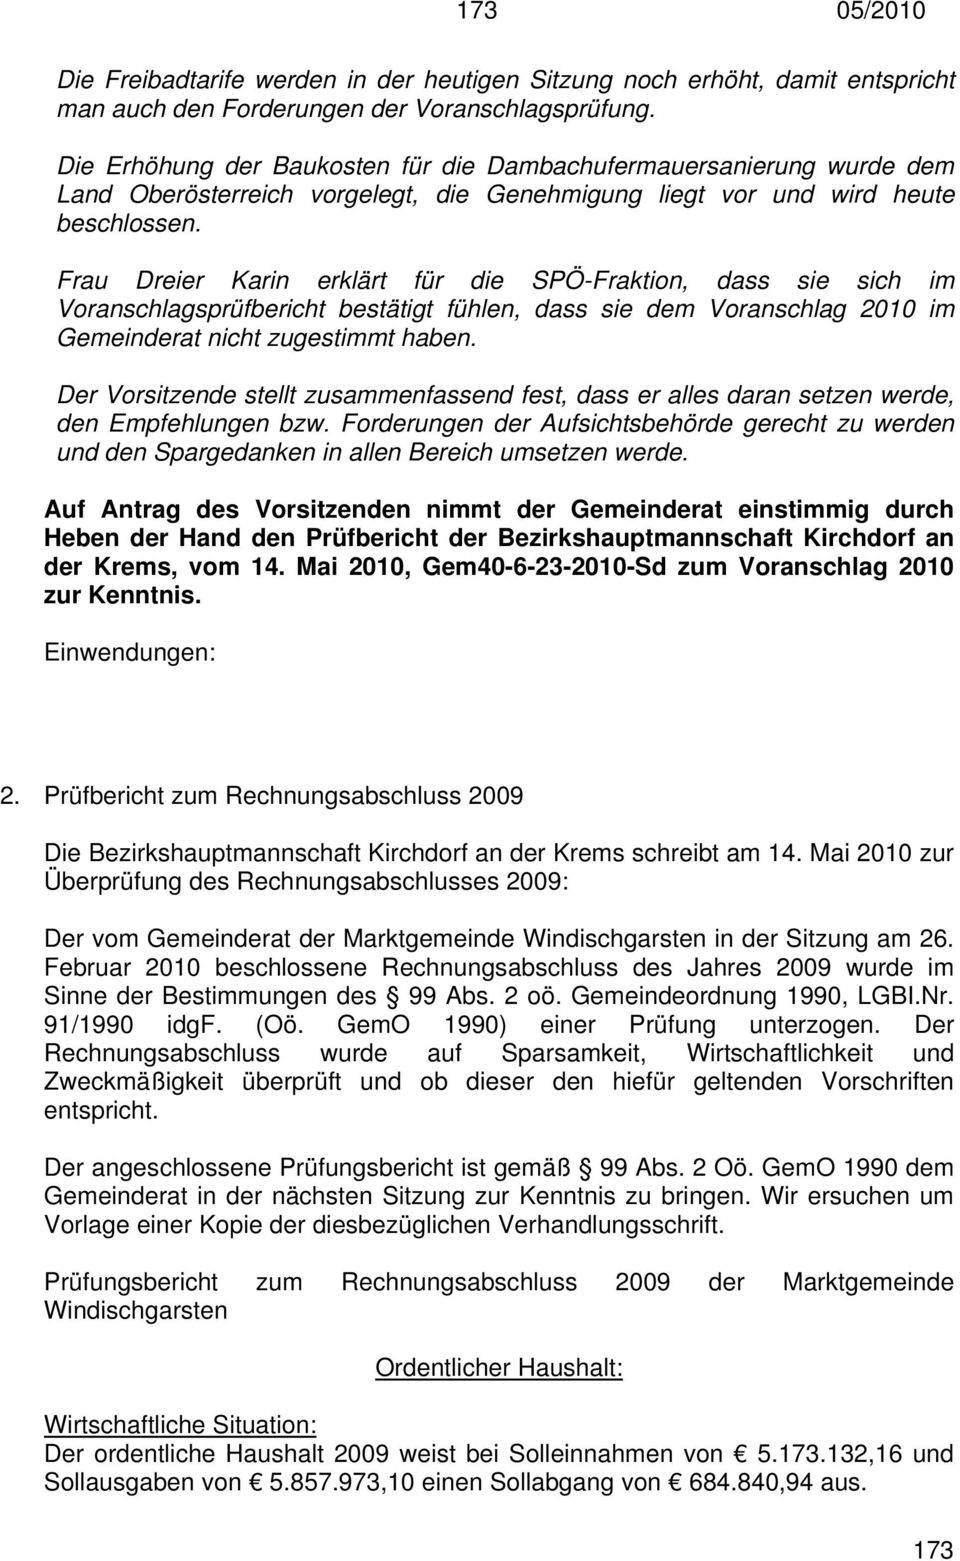 Frau Dreier Karin erklärt für die SPÖ-Fraktion, dass sie sich im Voranschlagsprüfbericht bestätigt fühlen, dass sie dem Voranschlag 2010 im Gemeinderat nicht zugestimmt haben.